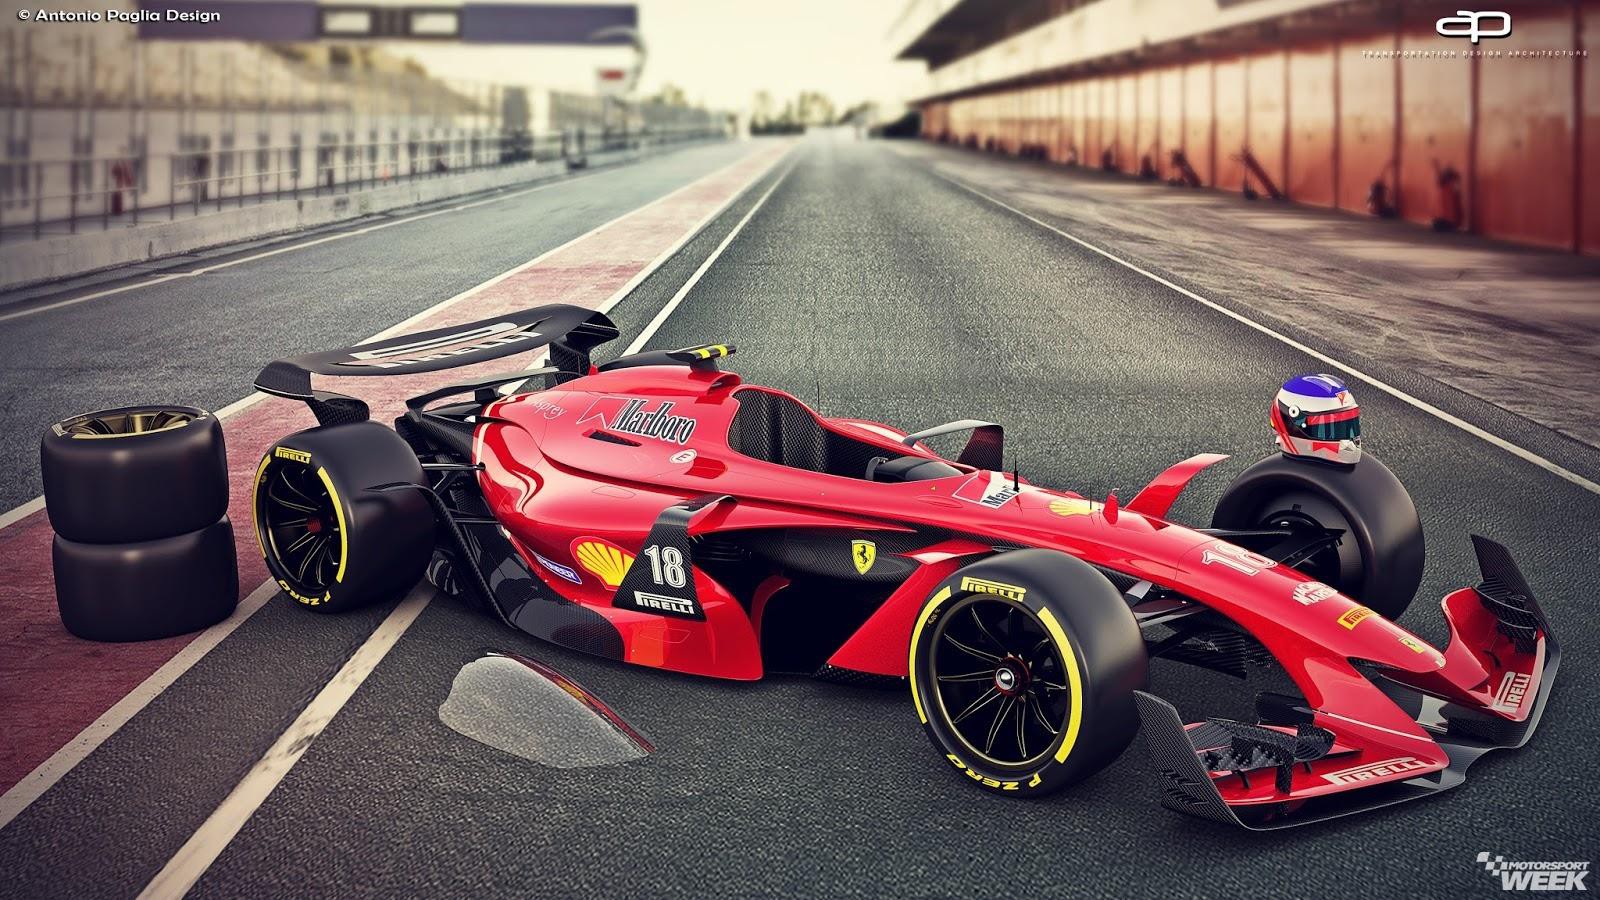 NÓNG: Rò rỉ hình ảnh mới của mẫu xe đua F1 từ mùa giải 2021 - Ảnh 4.